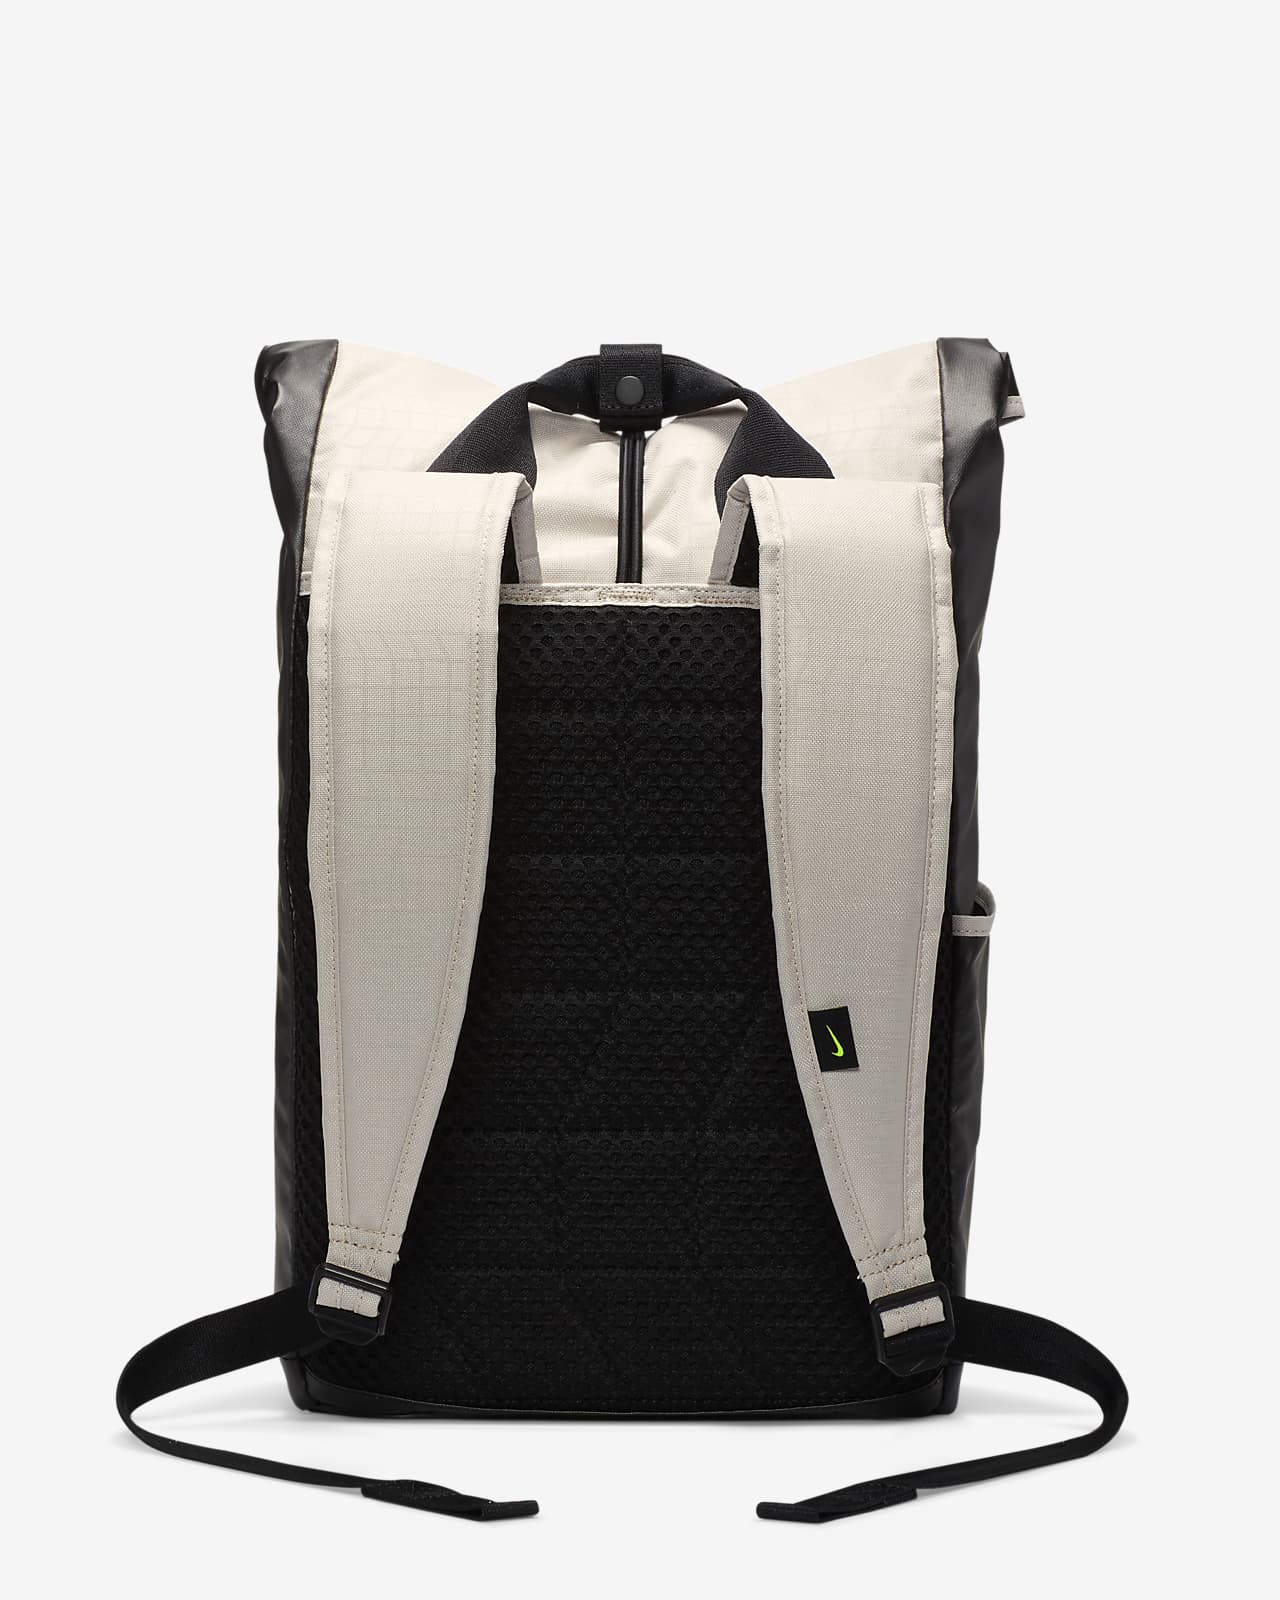 nike radiate printed training backpack